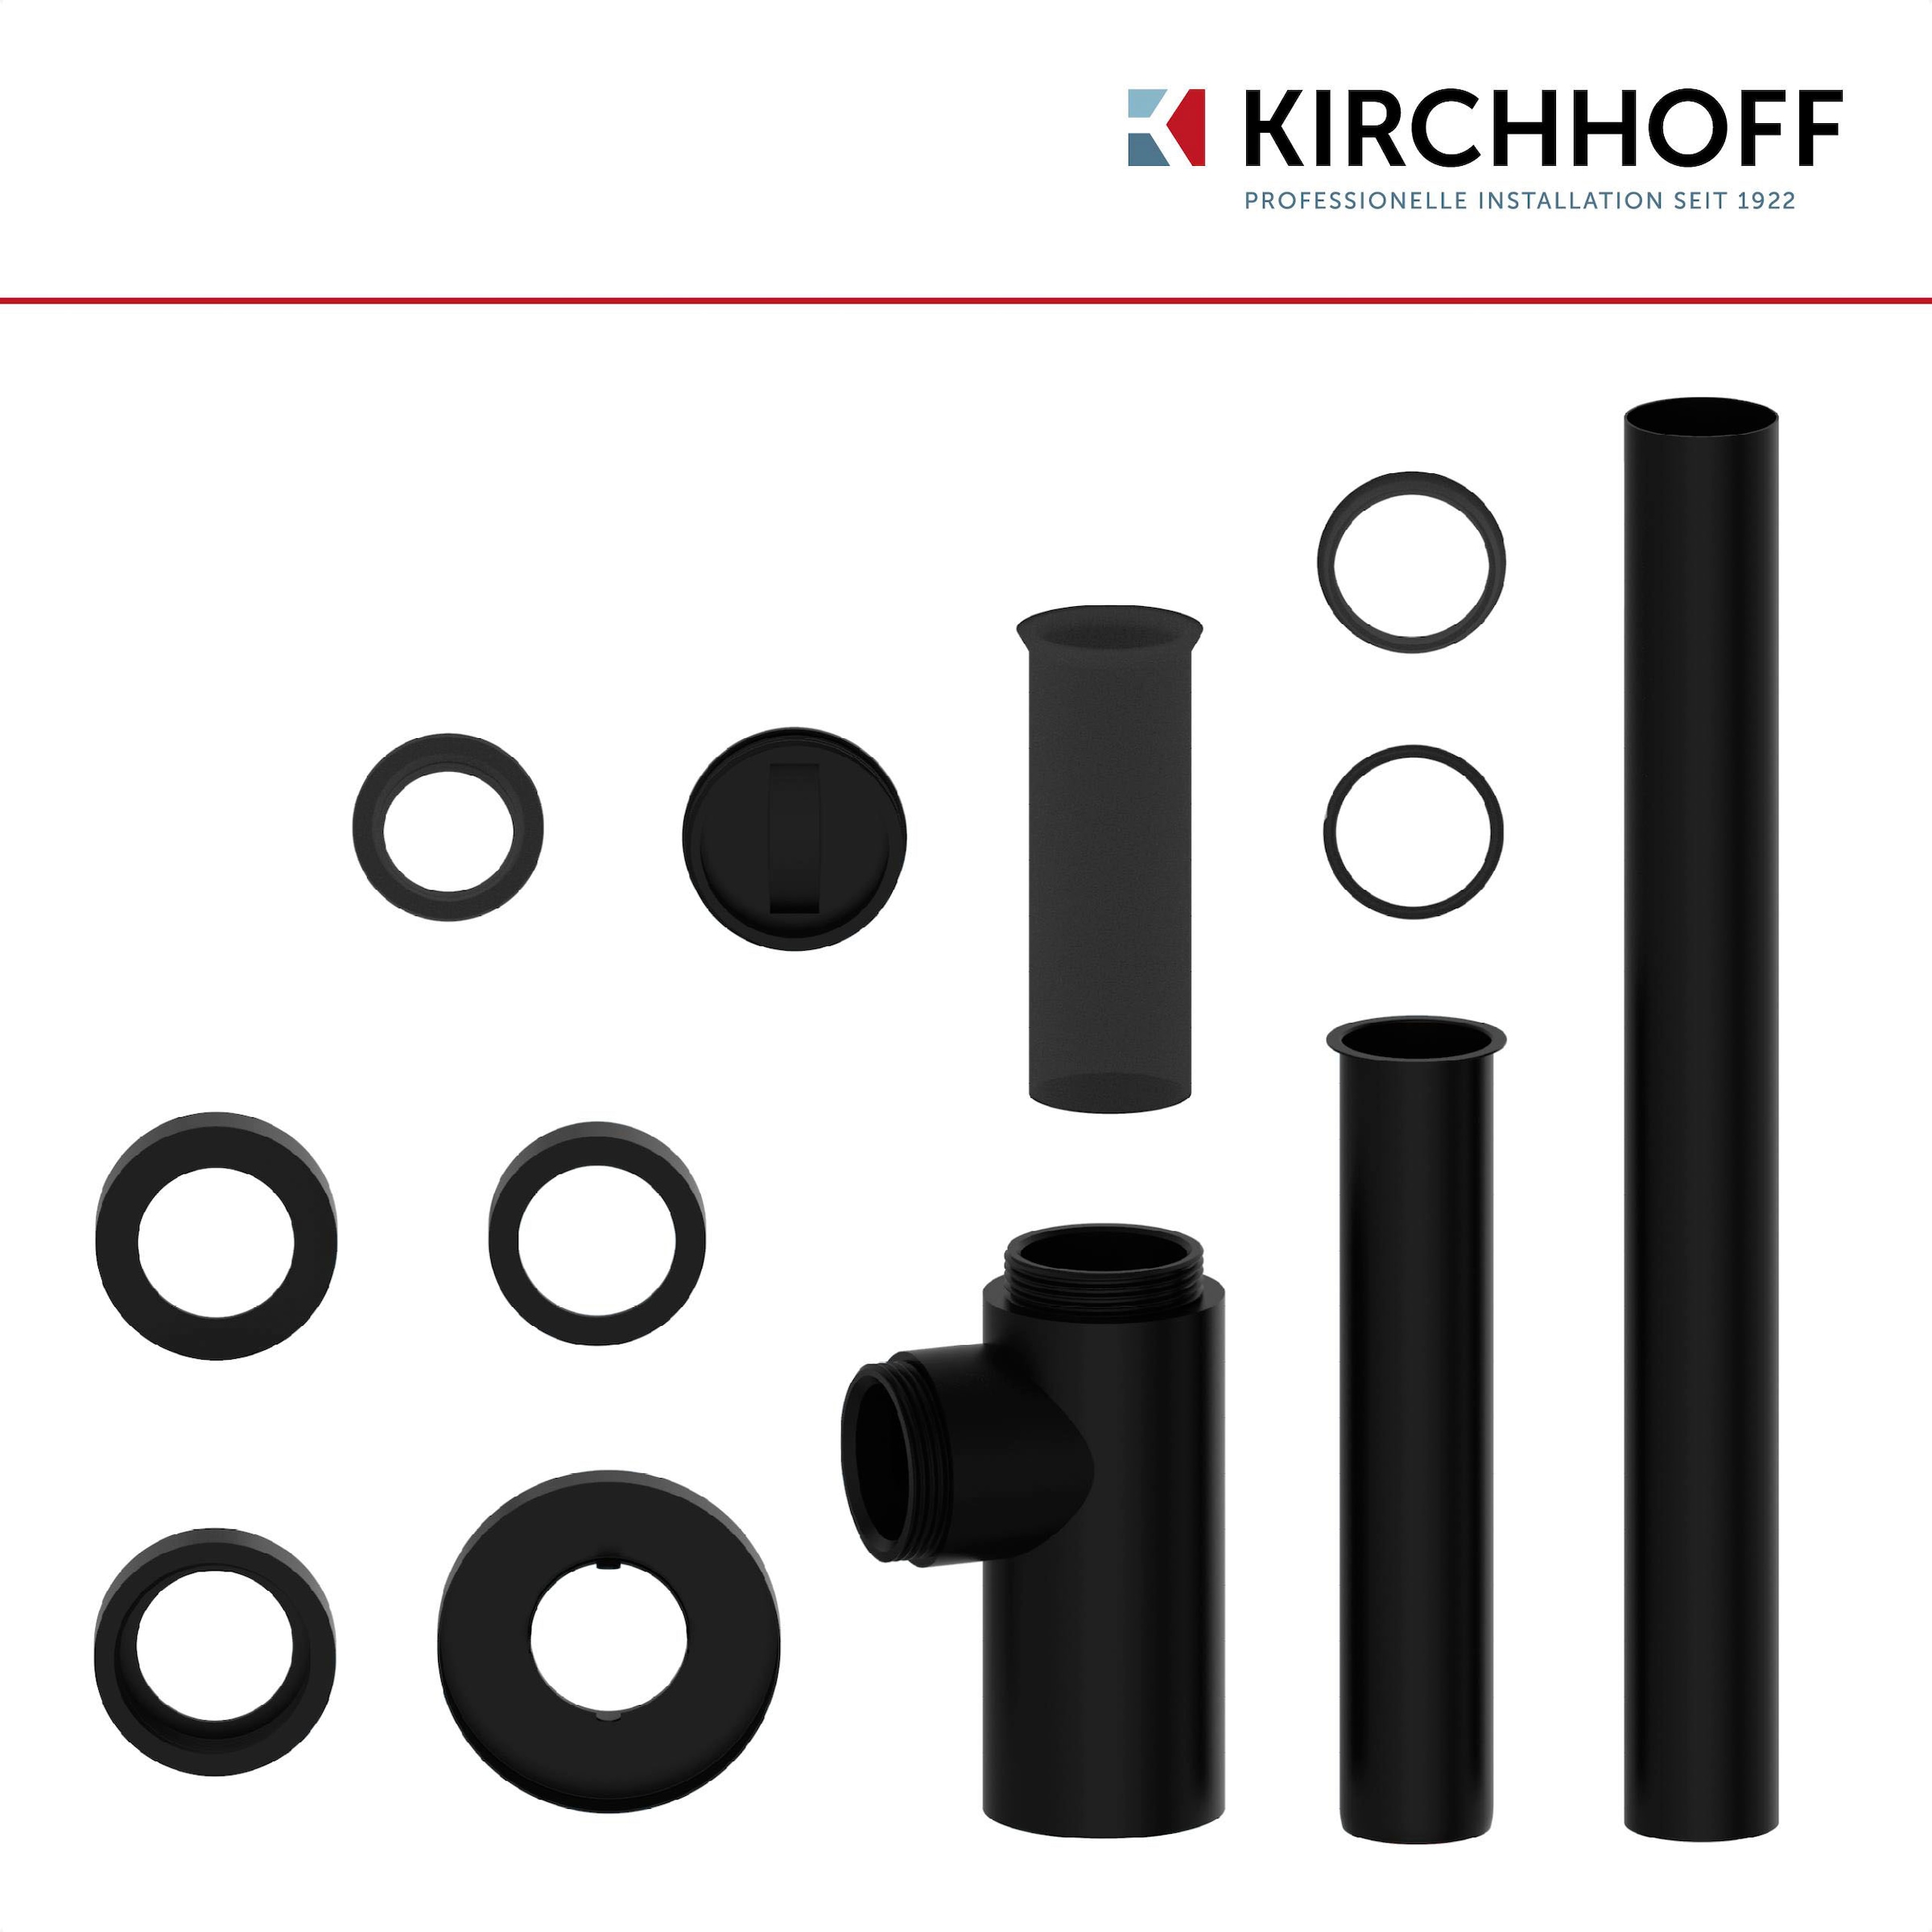 Kirchhoff Siphon »Design Flaschensiphon inkl. Reinigungsöffnung«, Röhrengeruchsverschluss für Waschbecken/Waschtische